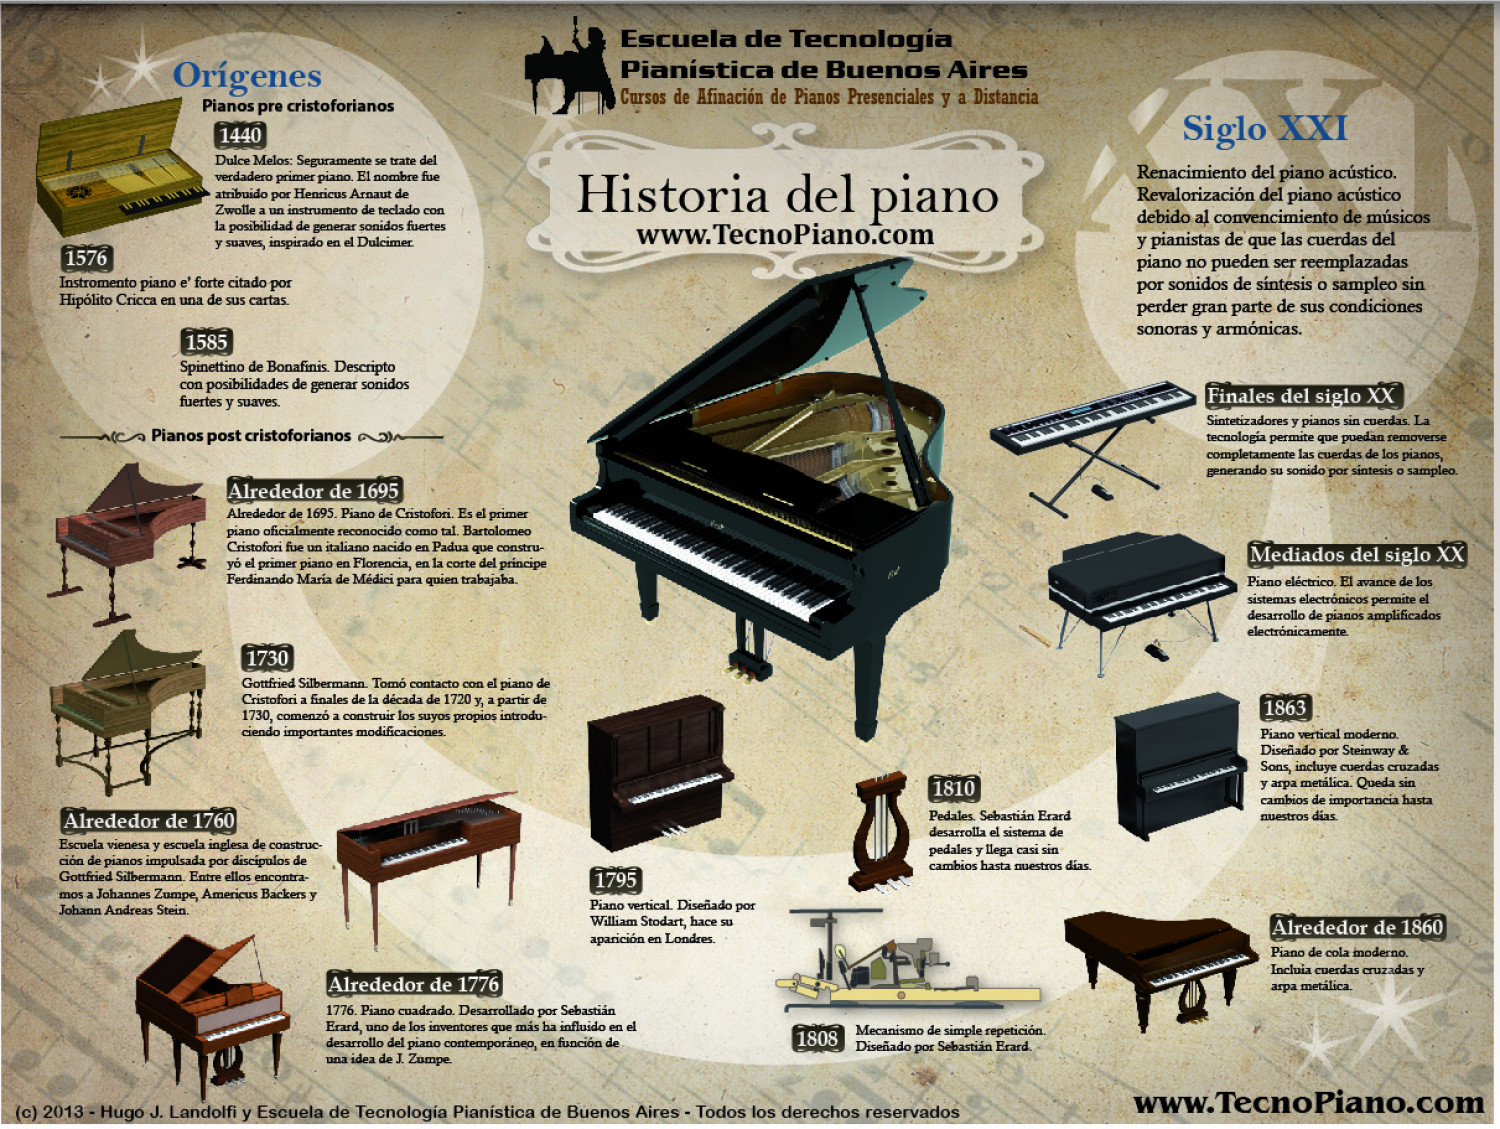 Historia del piano Infographic